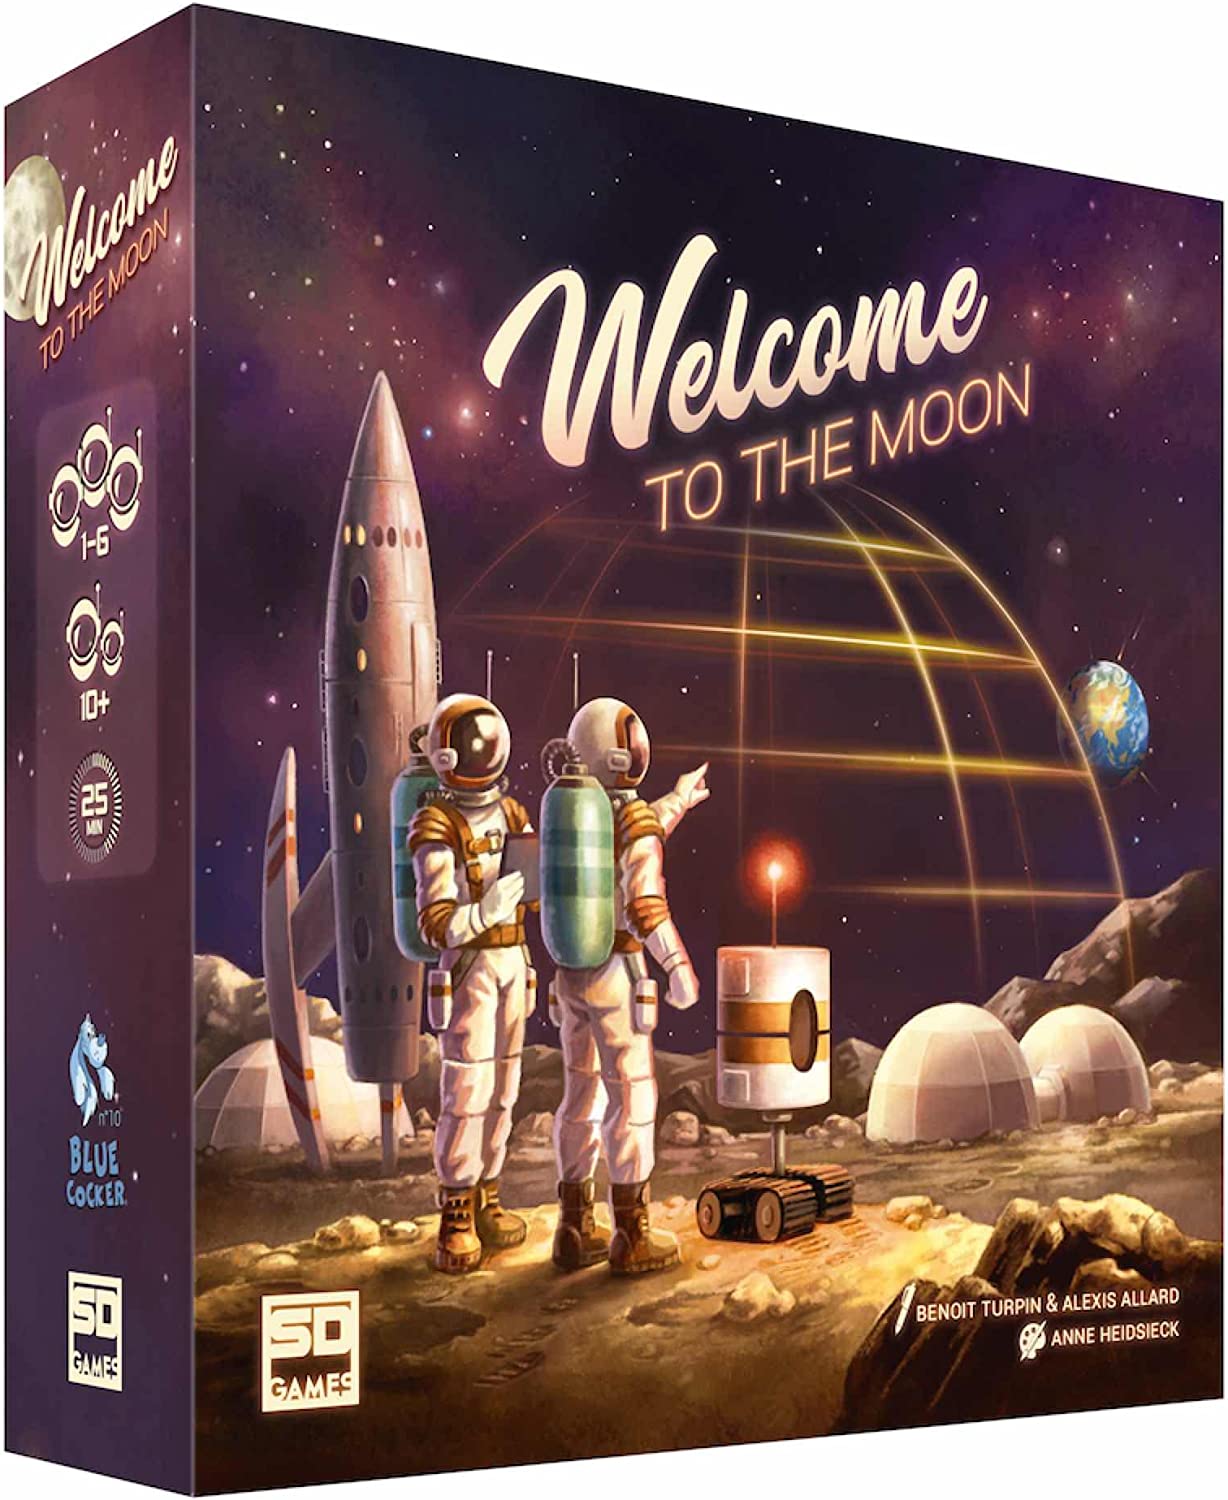 Ver categoría de welcome to the moon